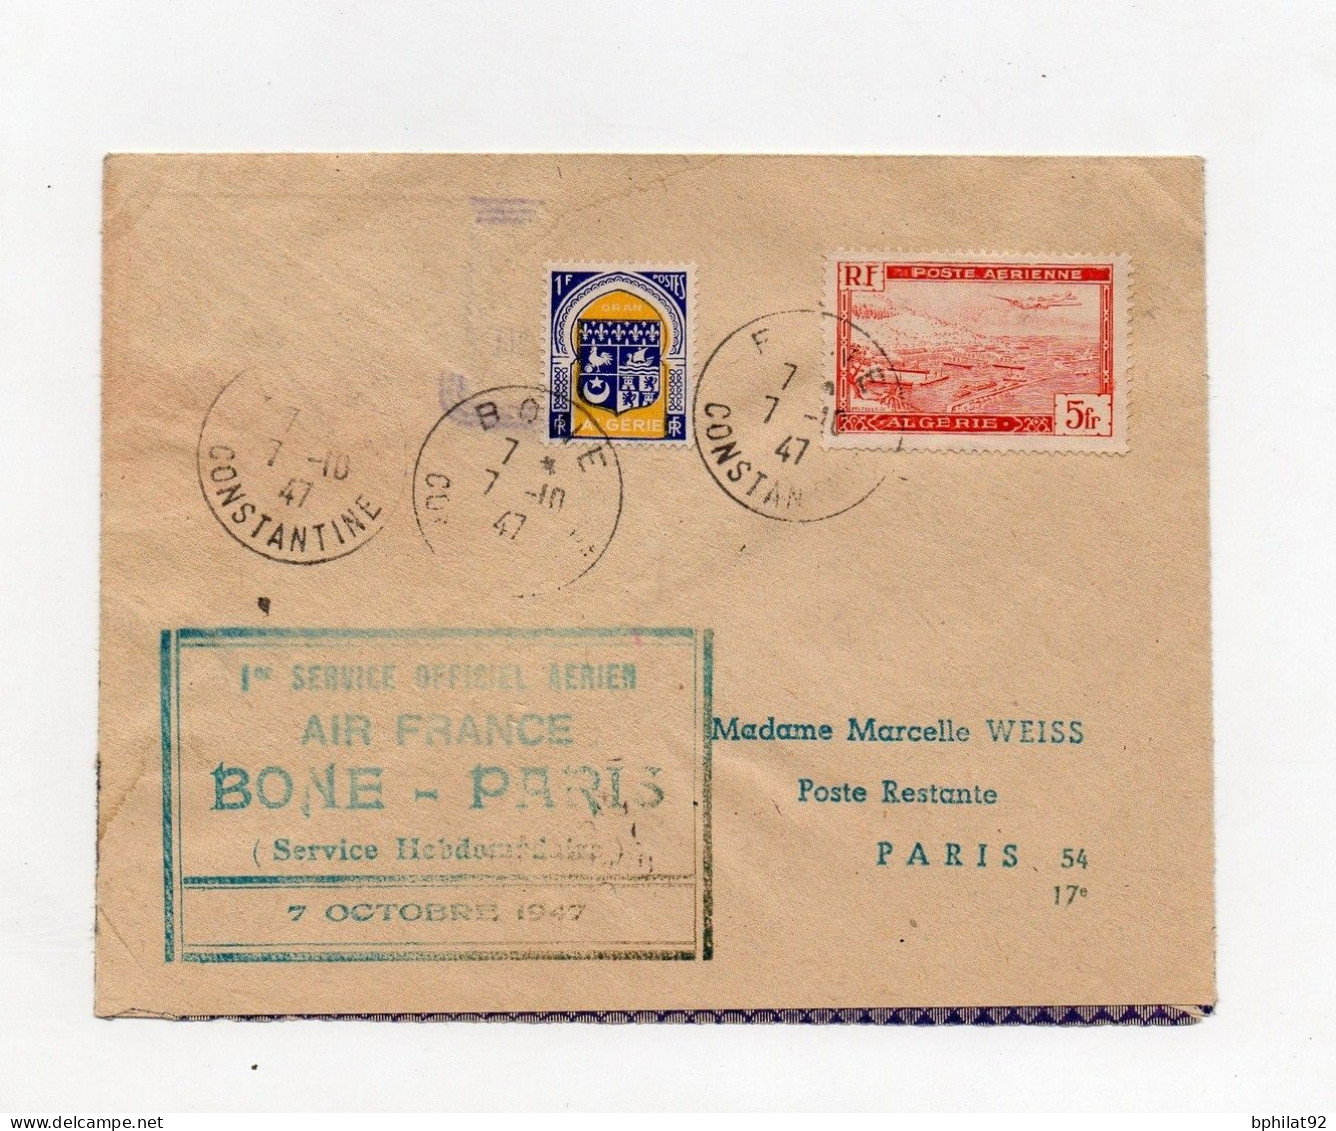 !!! ALGERIE, INAUGURATION DE LA LIGNE DIRECTE BONE-PARIS 9/10/1947, LETTRE RECAPEE DE L'ACCIDENT D'AVION GRIFFE AU DOS - Lettere Accidentate